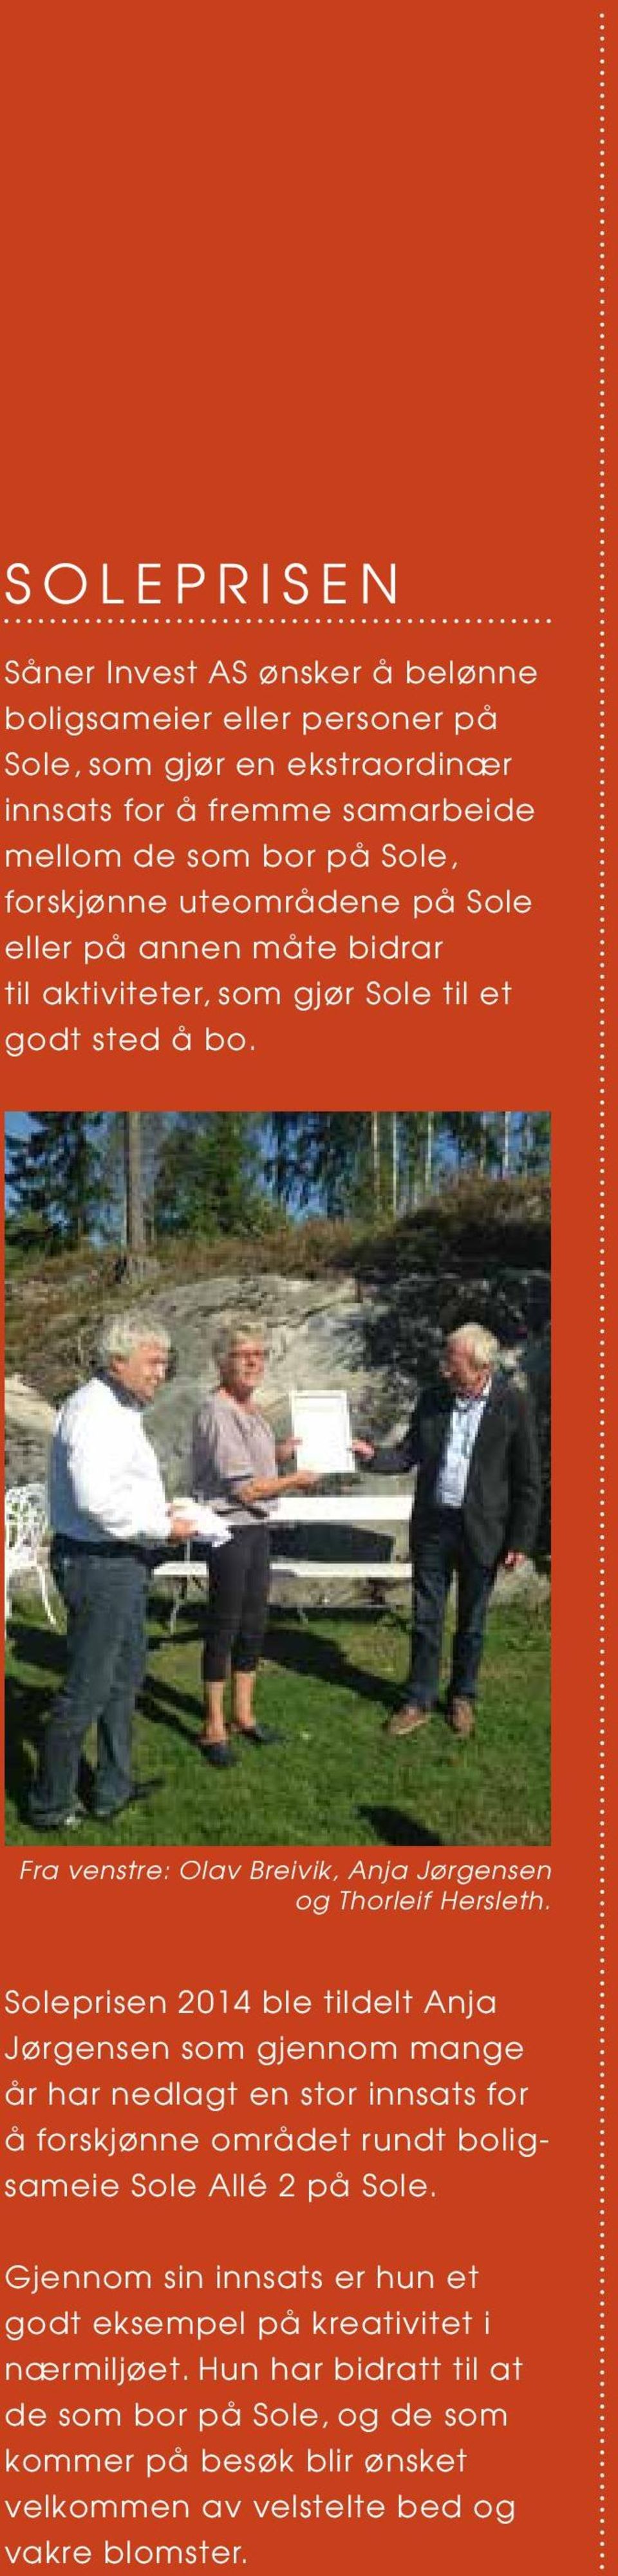 Soleprisen 2014 ble tildelt Anja Jørgensen som gjennom mange år har nedlagt en stor innsats for å forskjønne området rundt boligsameie Sole Allé 2 på Sole.